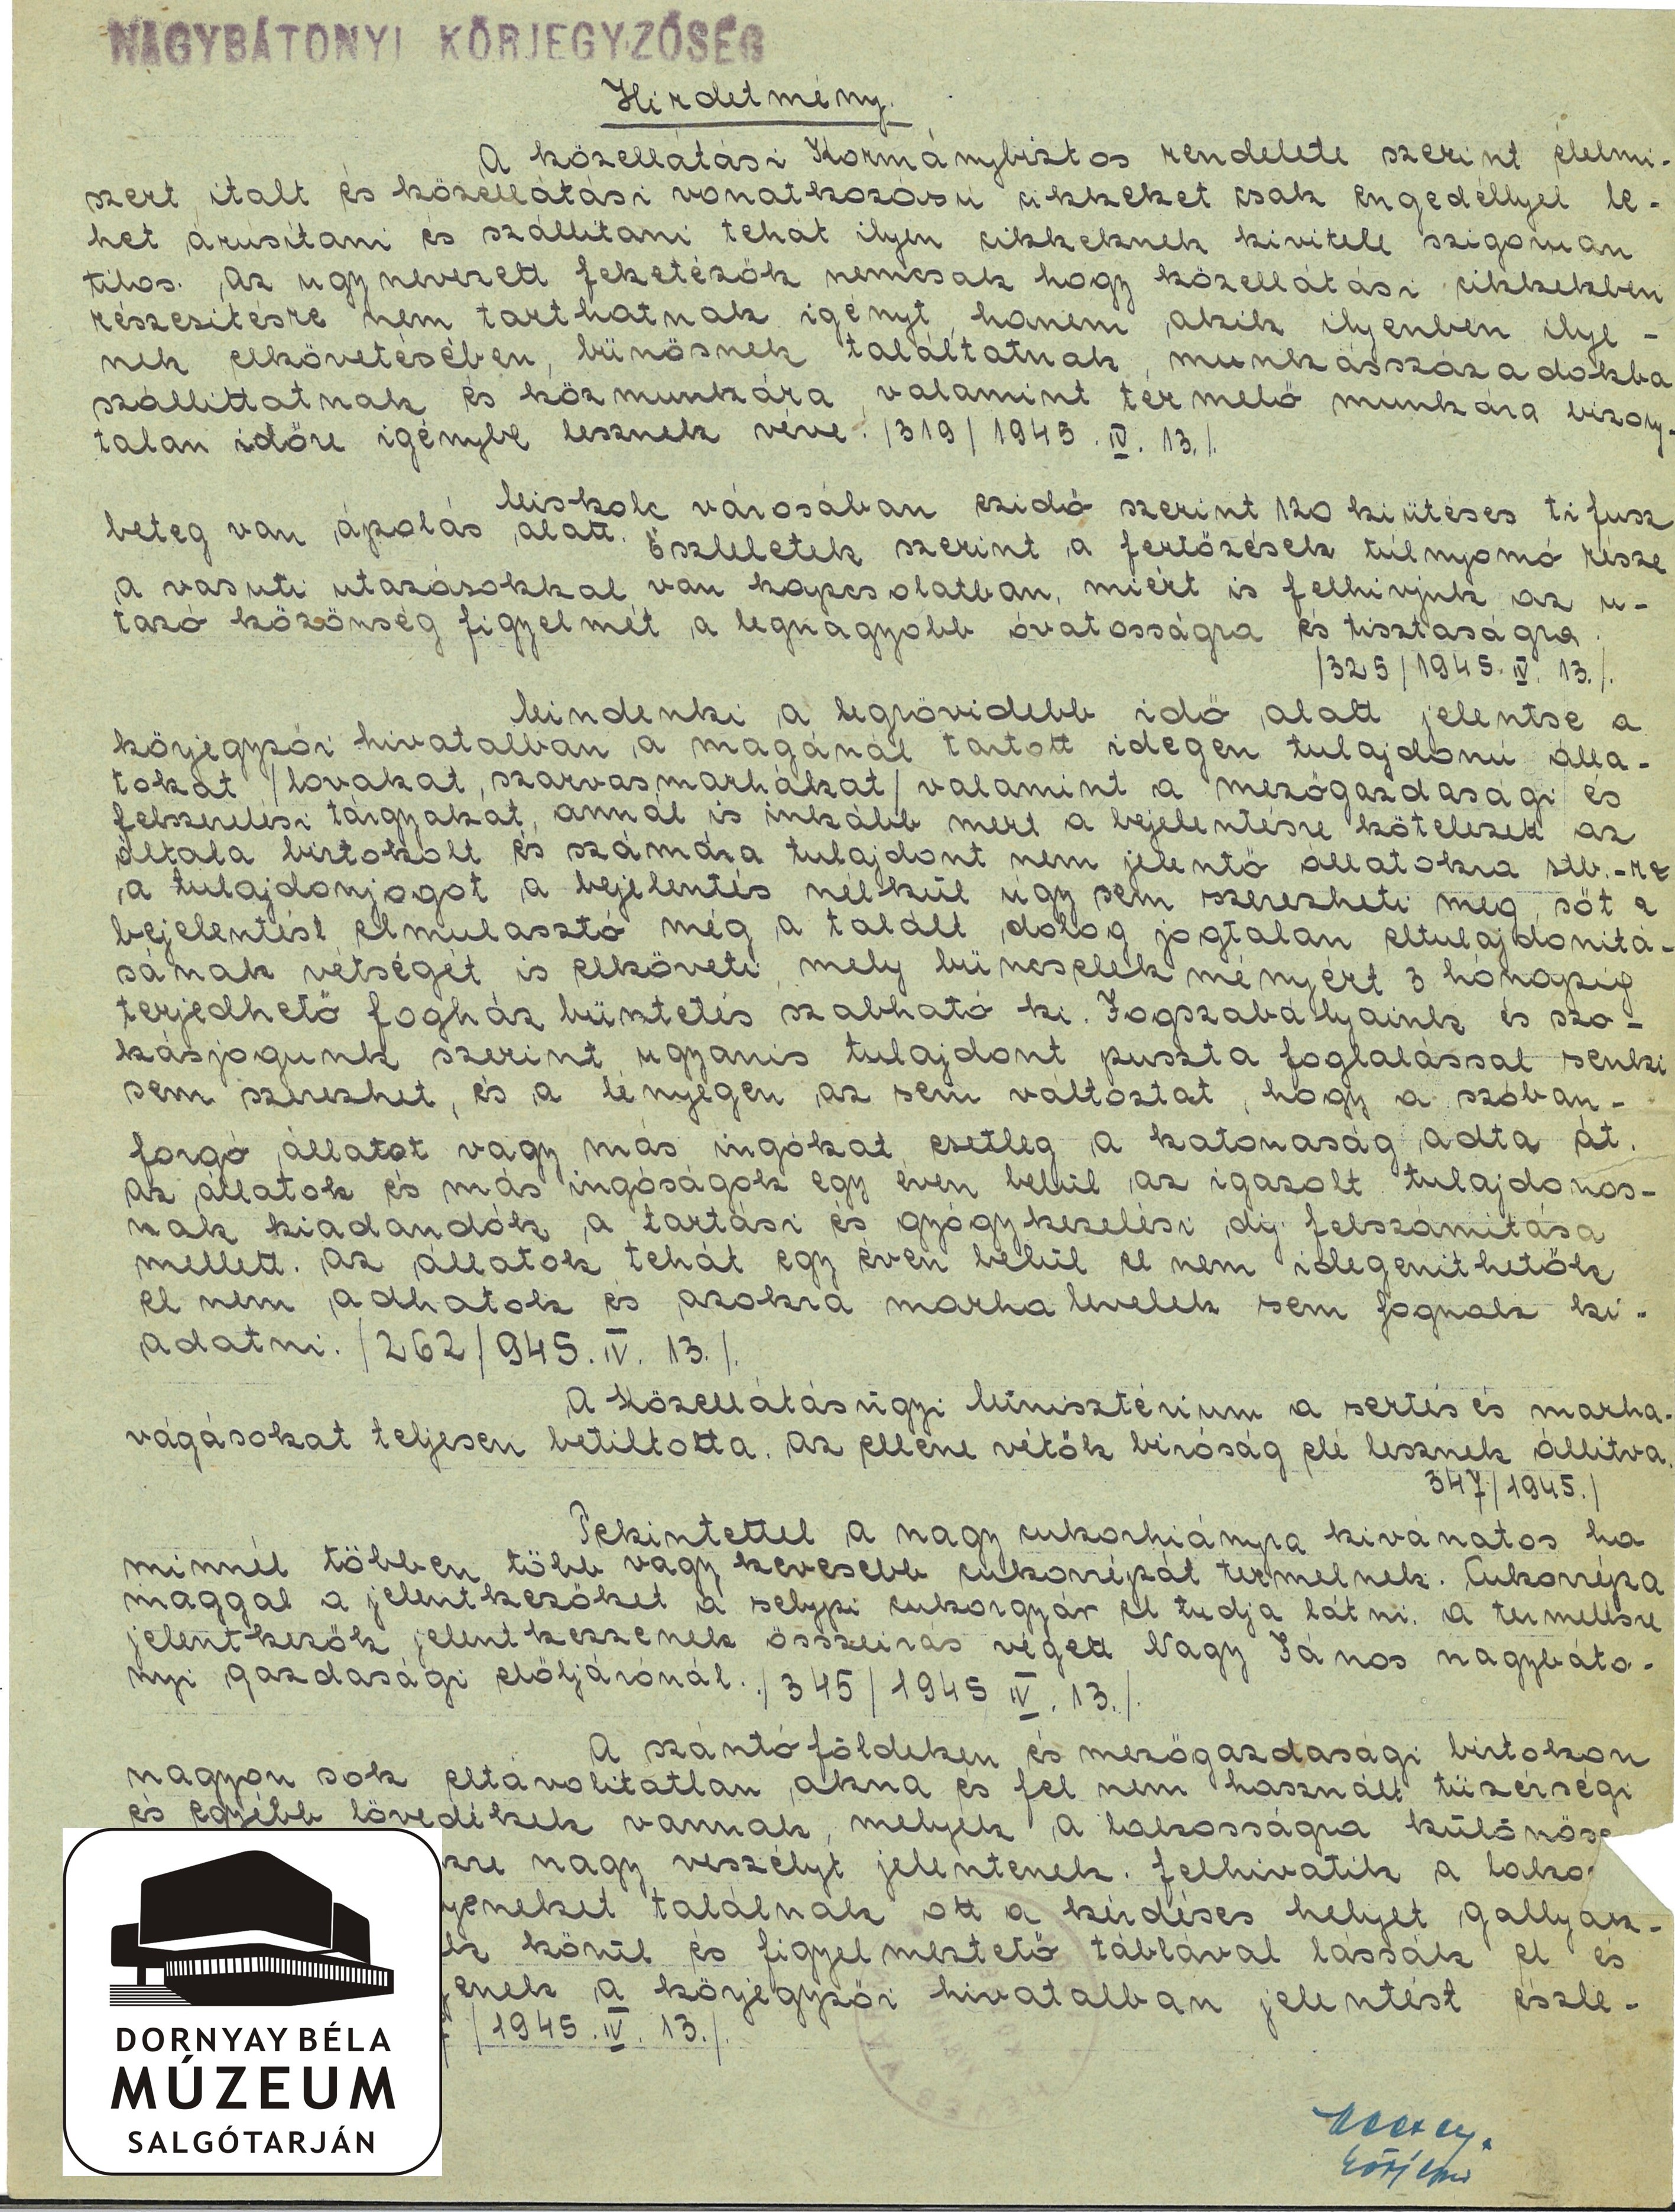 Nagybátonyi körjegyzőség hirdetménye közellátás ügyében (Dornyay Béla Múzeum, Salgótarján CC BY-NC-SA)